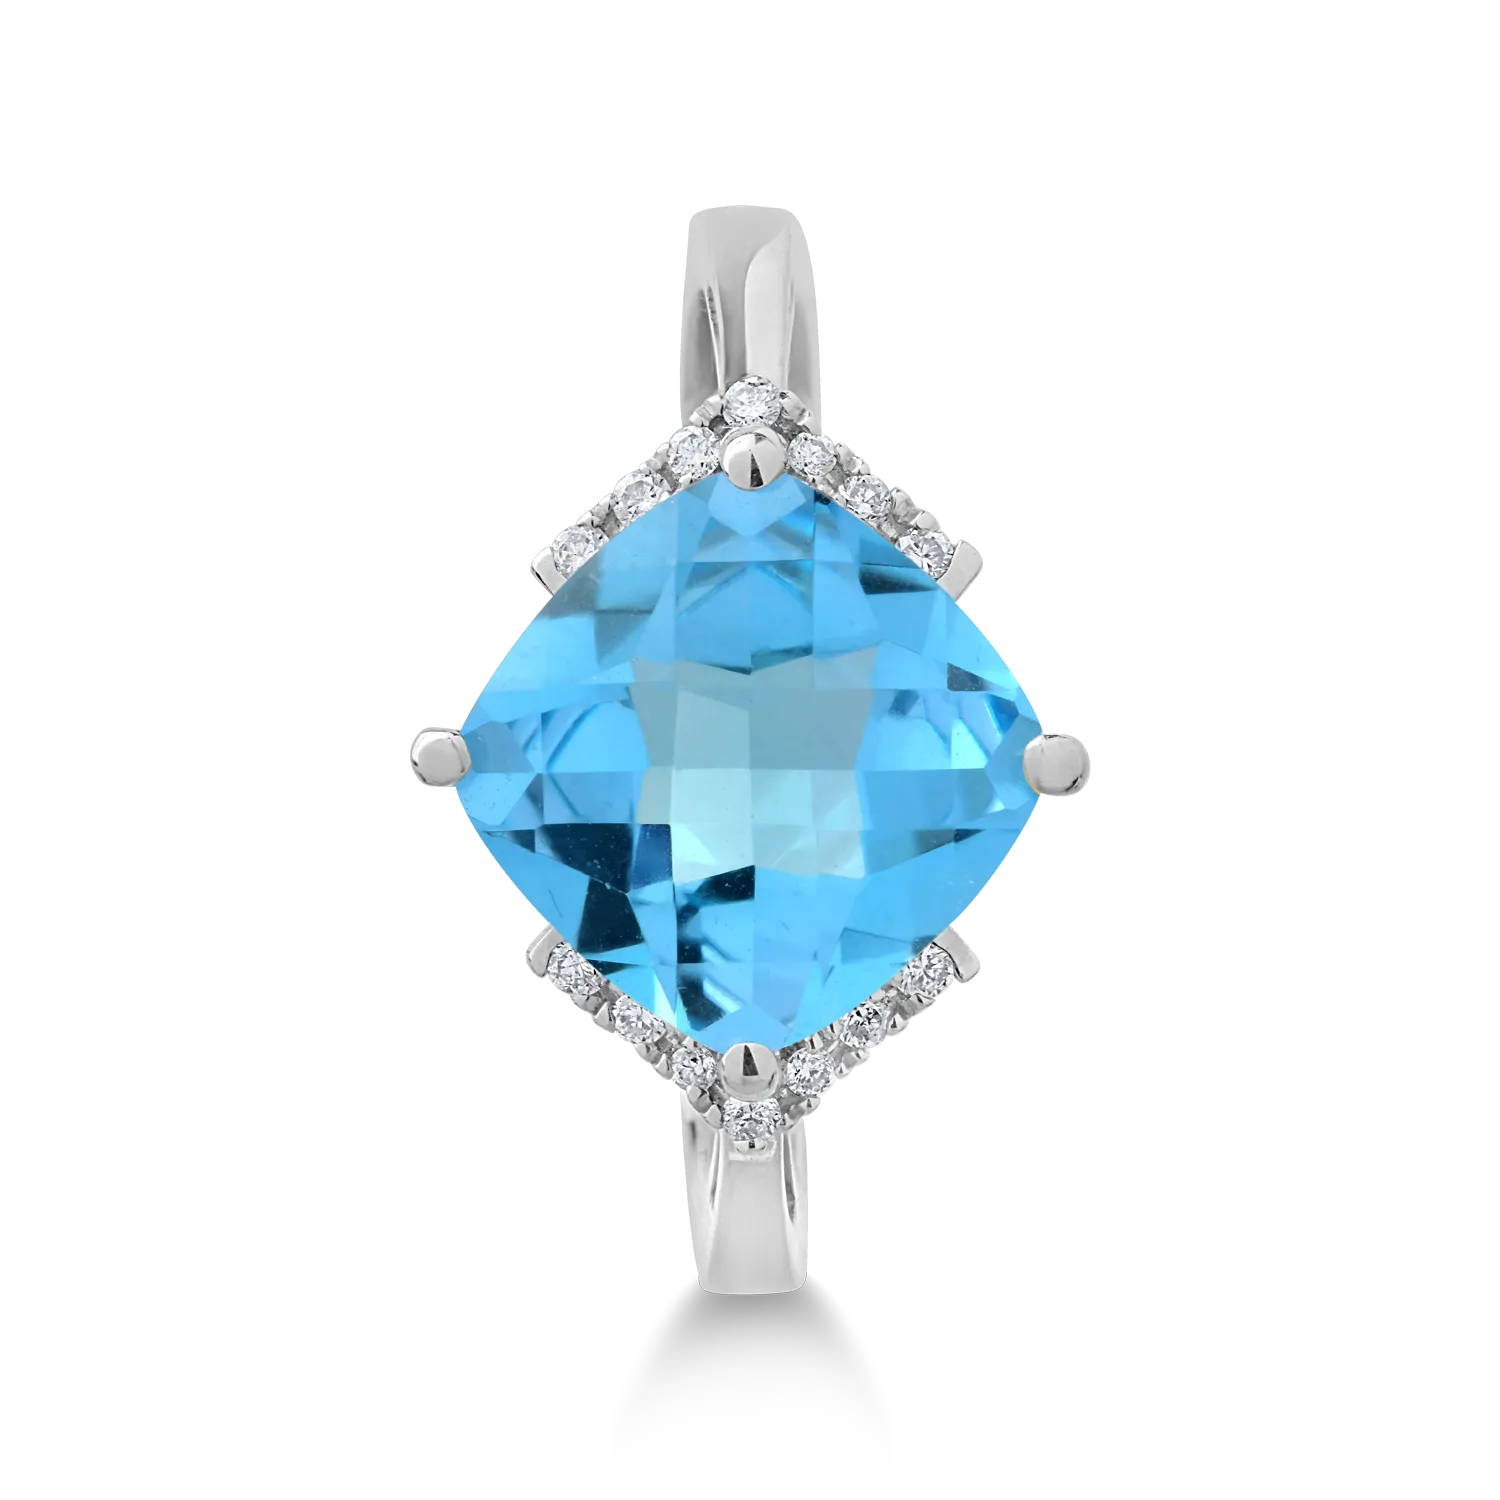 18 karátos fehérarany gyűrű 3.6 karátos kék topázzal és 0.08 karátos gyémántokkal